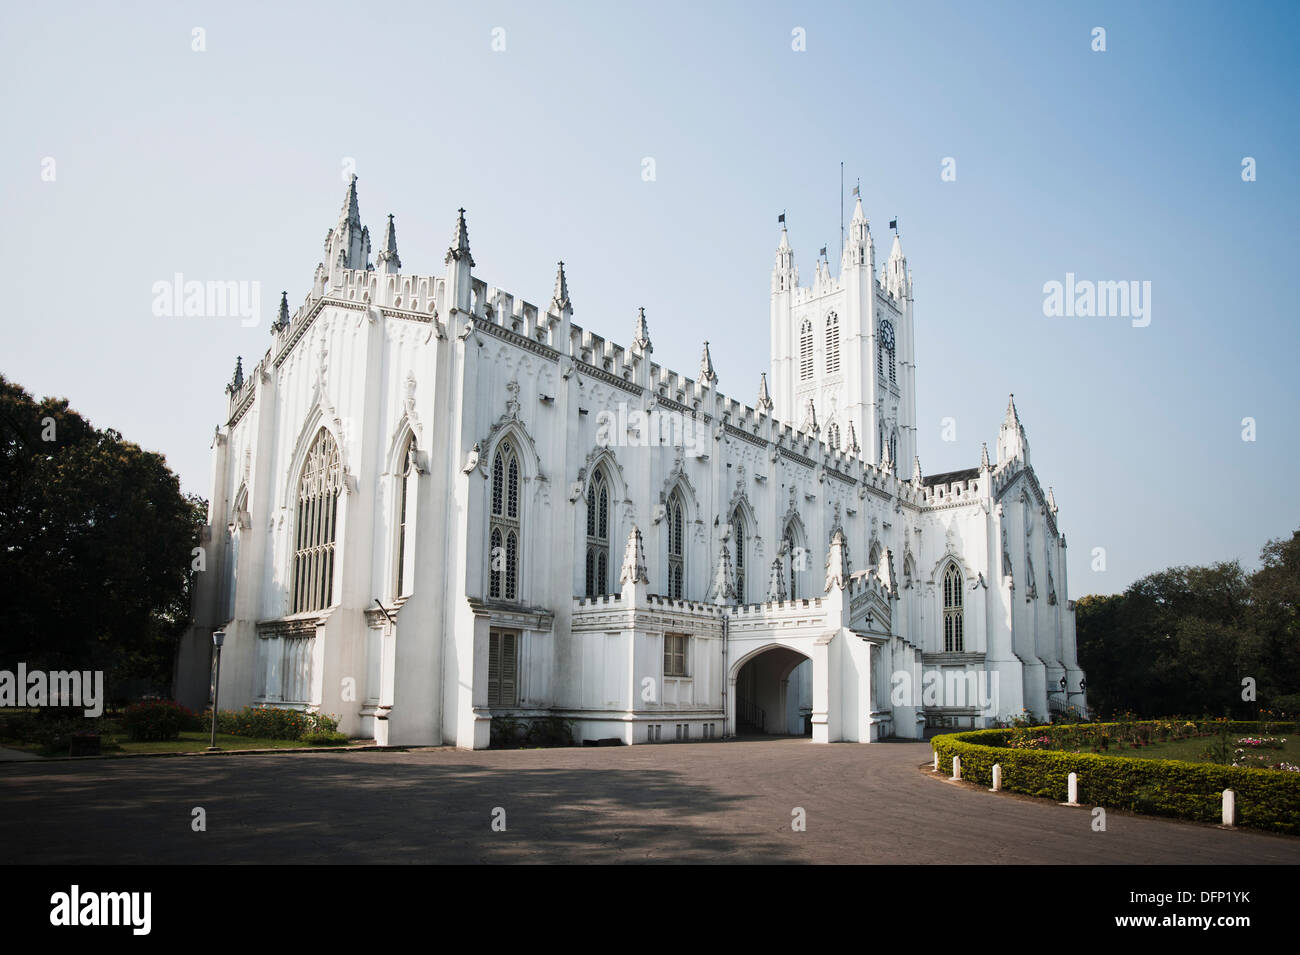 Façade d'une église, la Cathédrale St Paul, Kolkata, West Bengal, India Banque D'Images